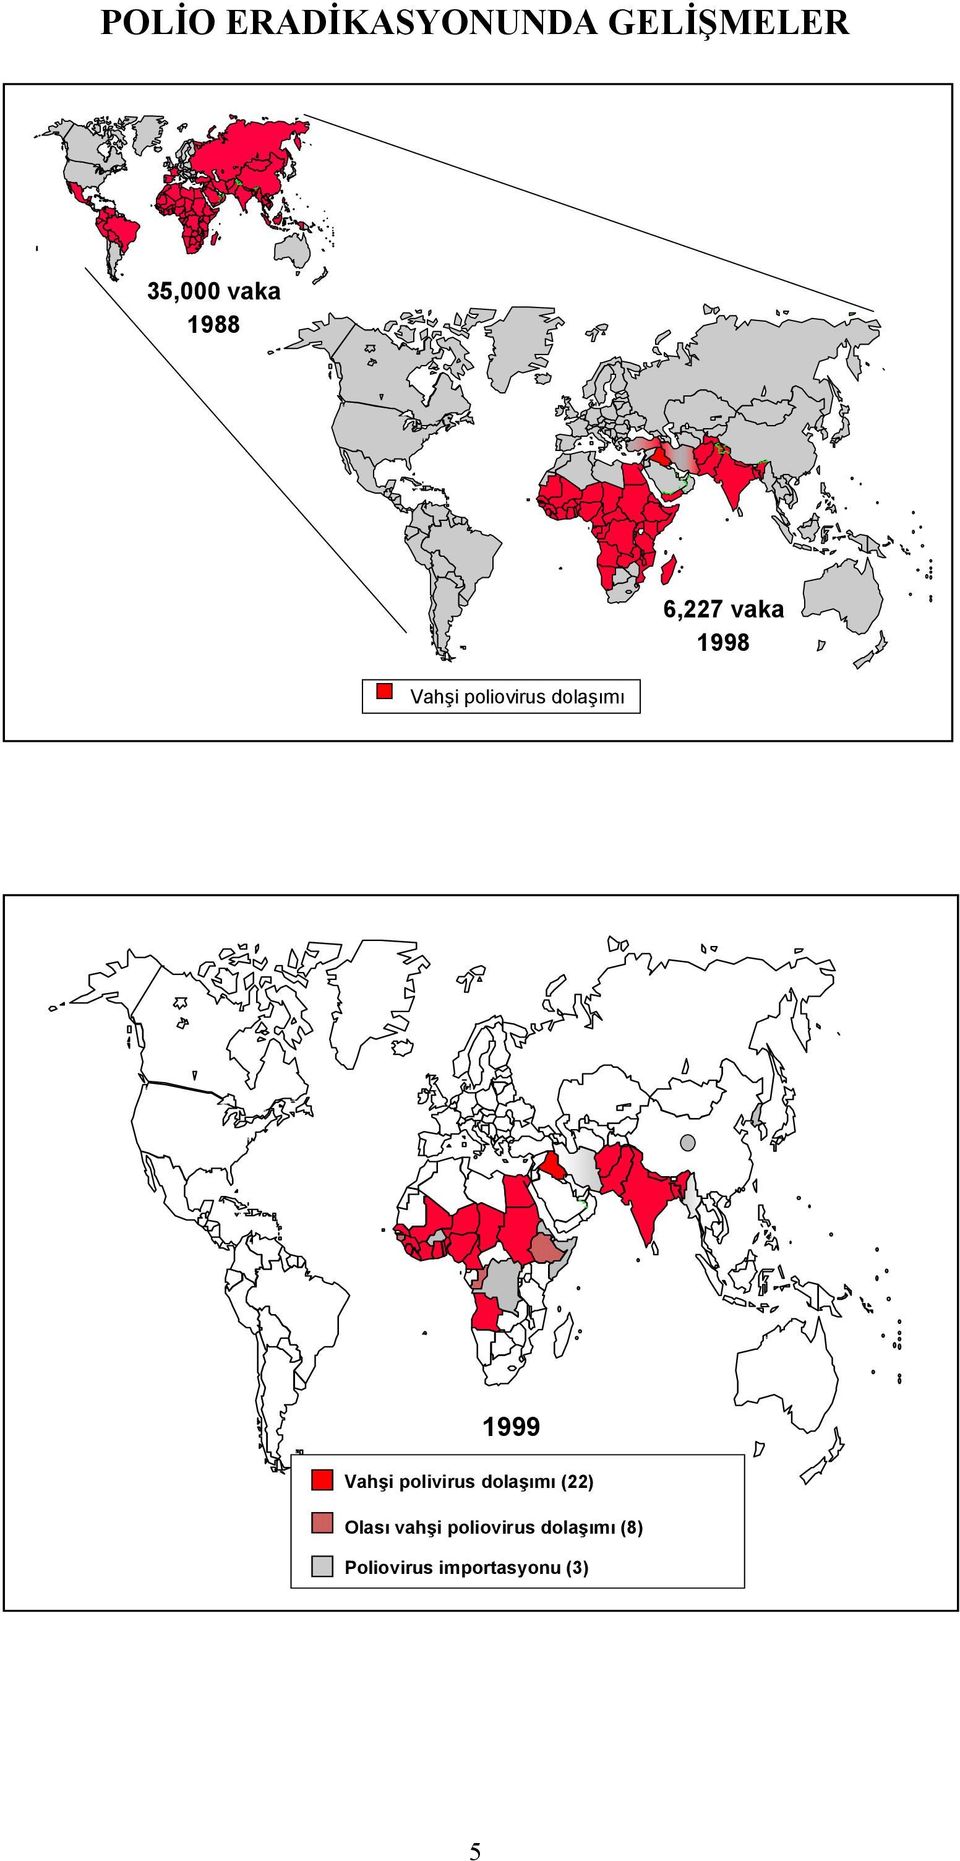 1999 Vahşi polivirus dolaşımı (22) Olası vahşi